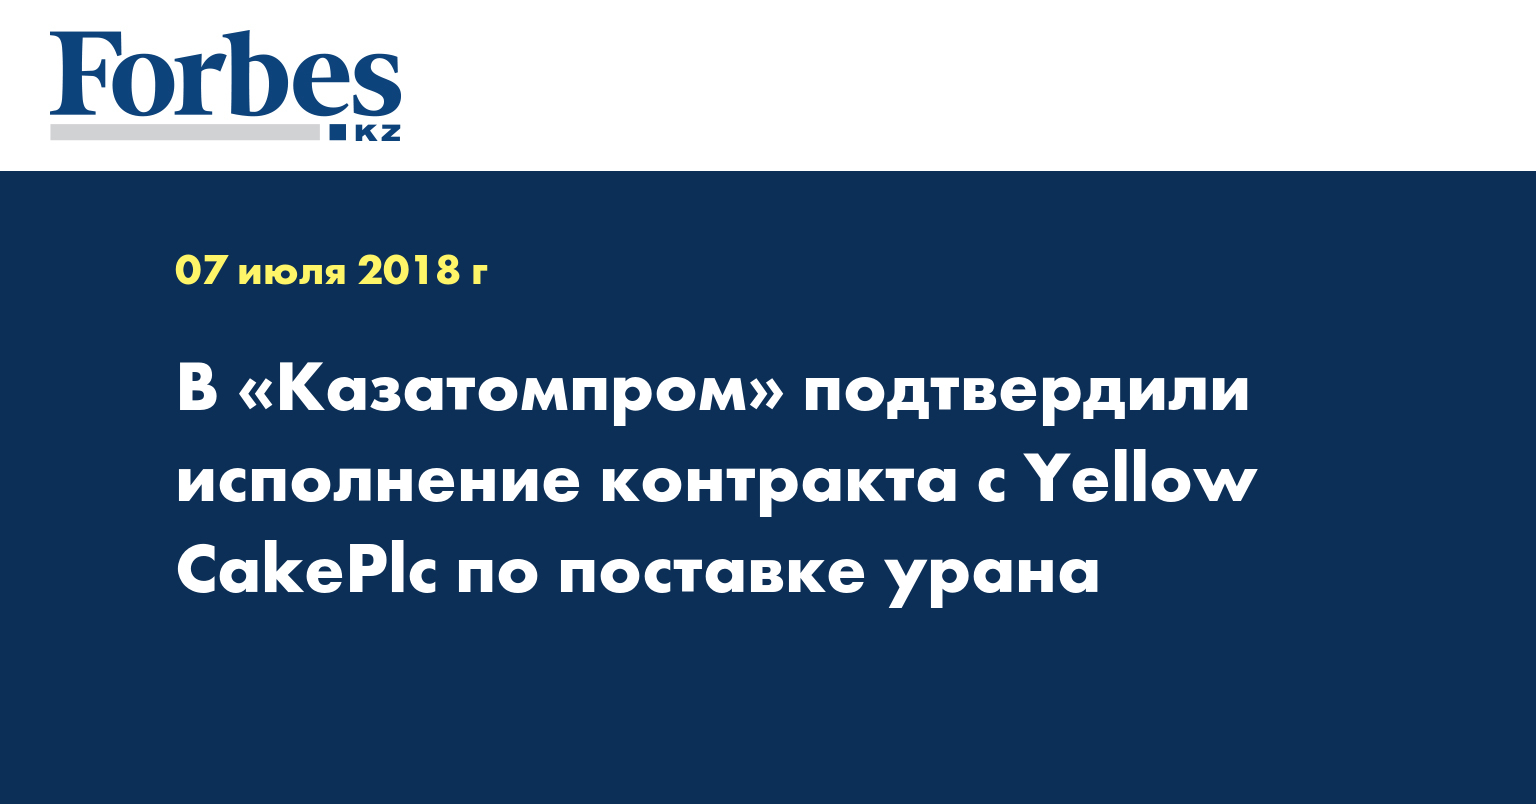 В «Казатомпроме» подтвердили исполнение контракта с Yellow CakePlc по поставке урана